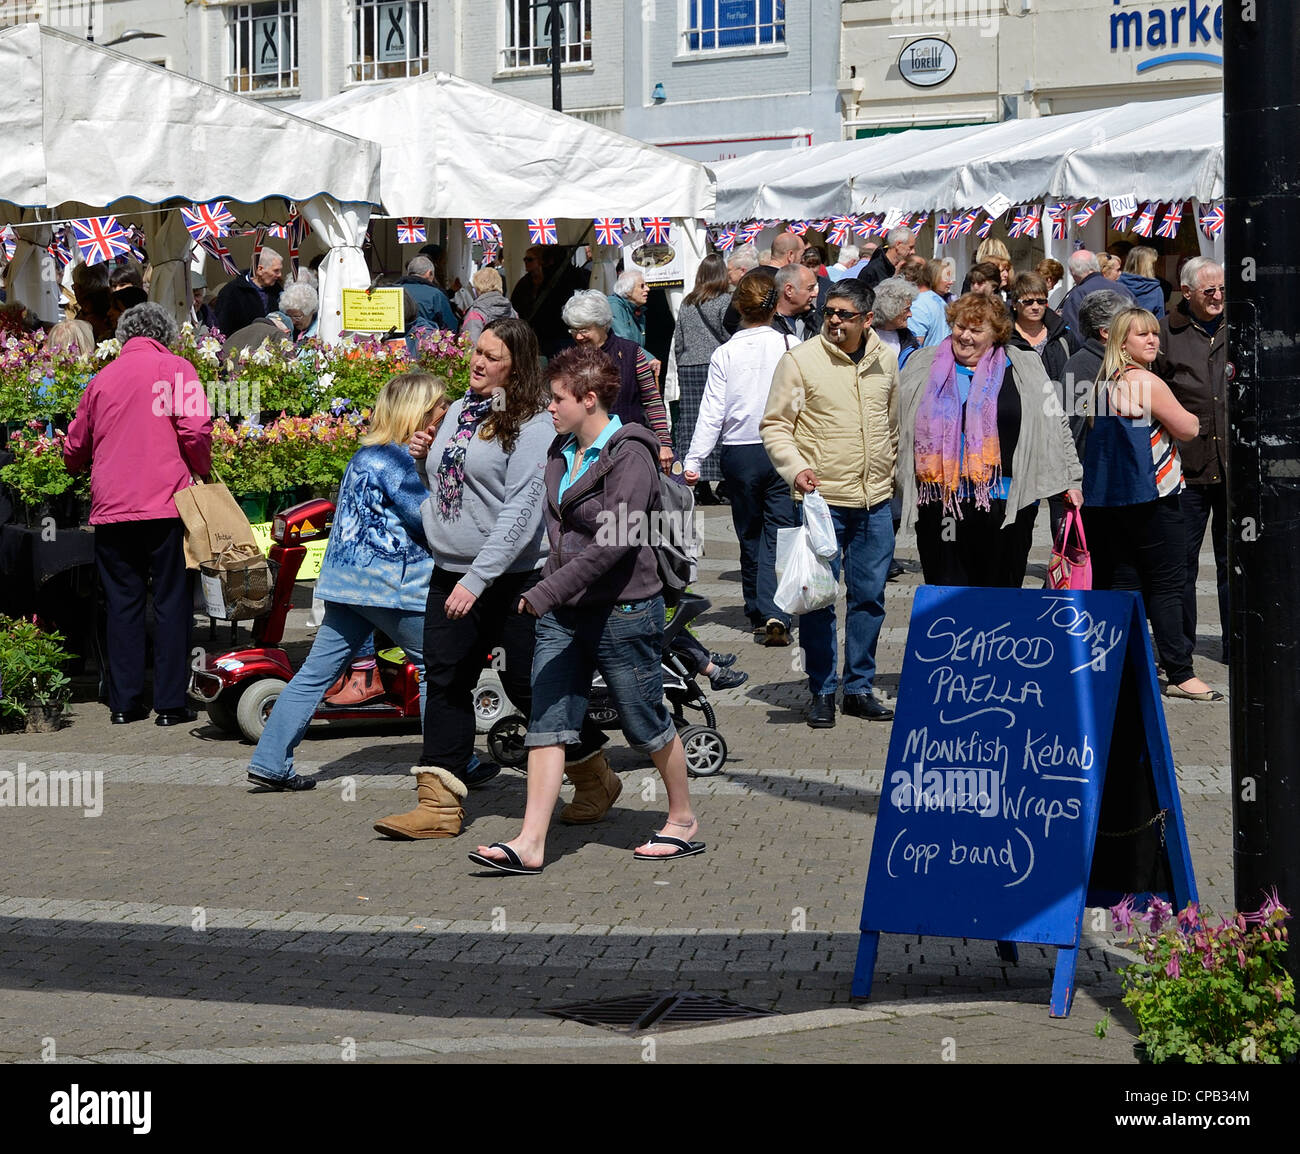 Einen belebten Markt-Tag in Truro, Cornwall, Uk Stockfoto